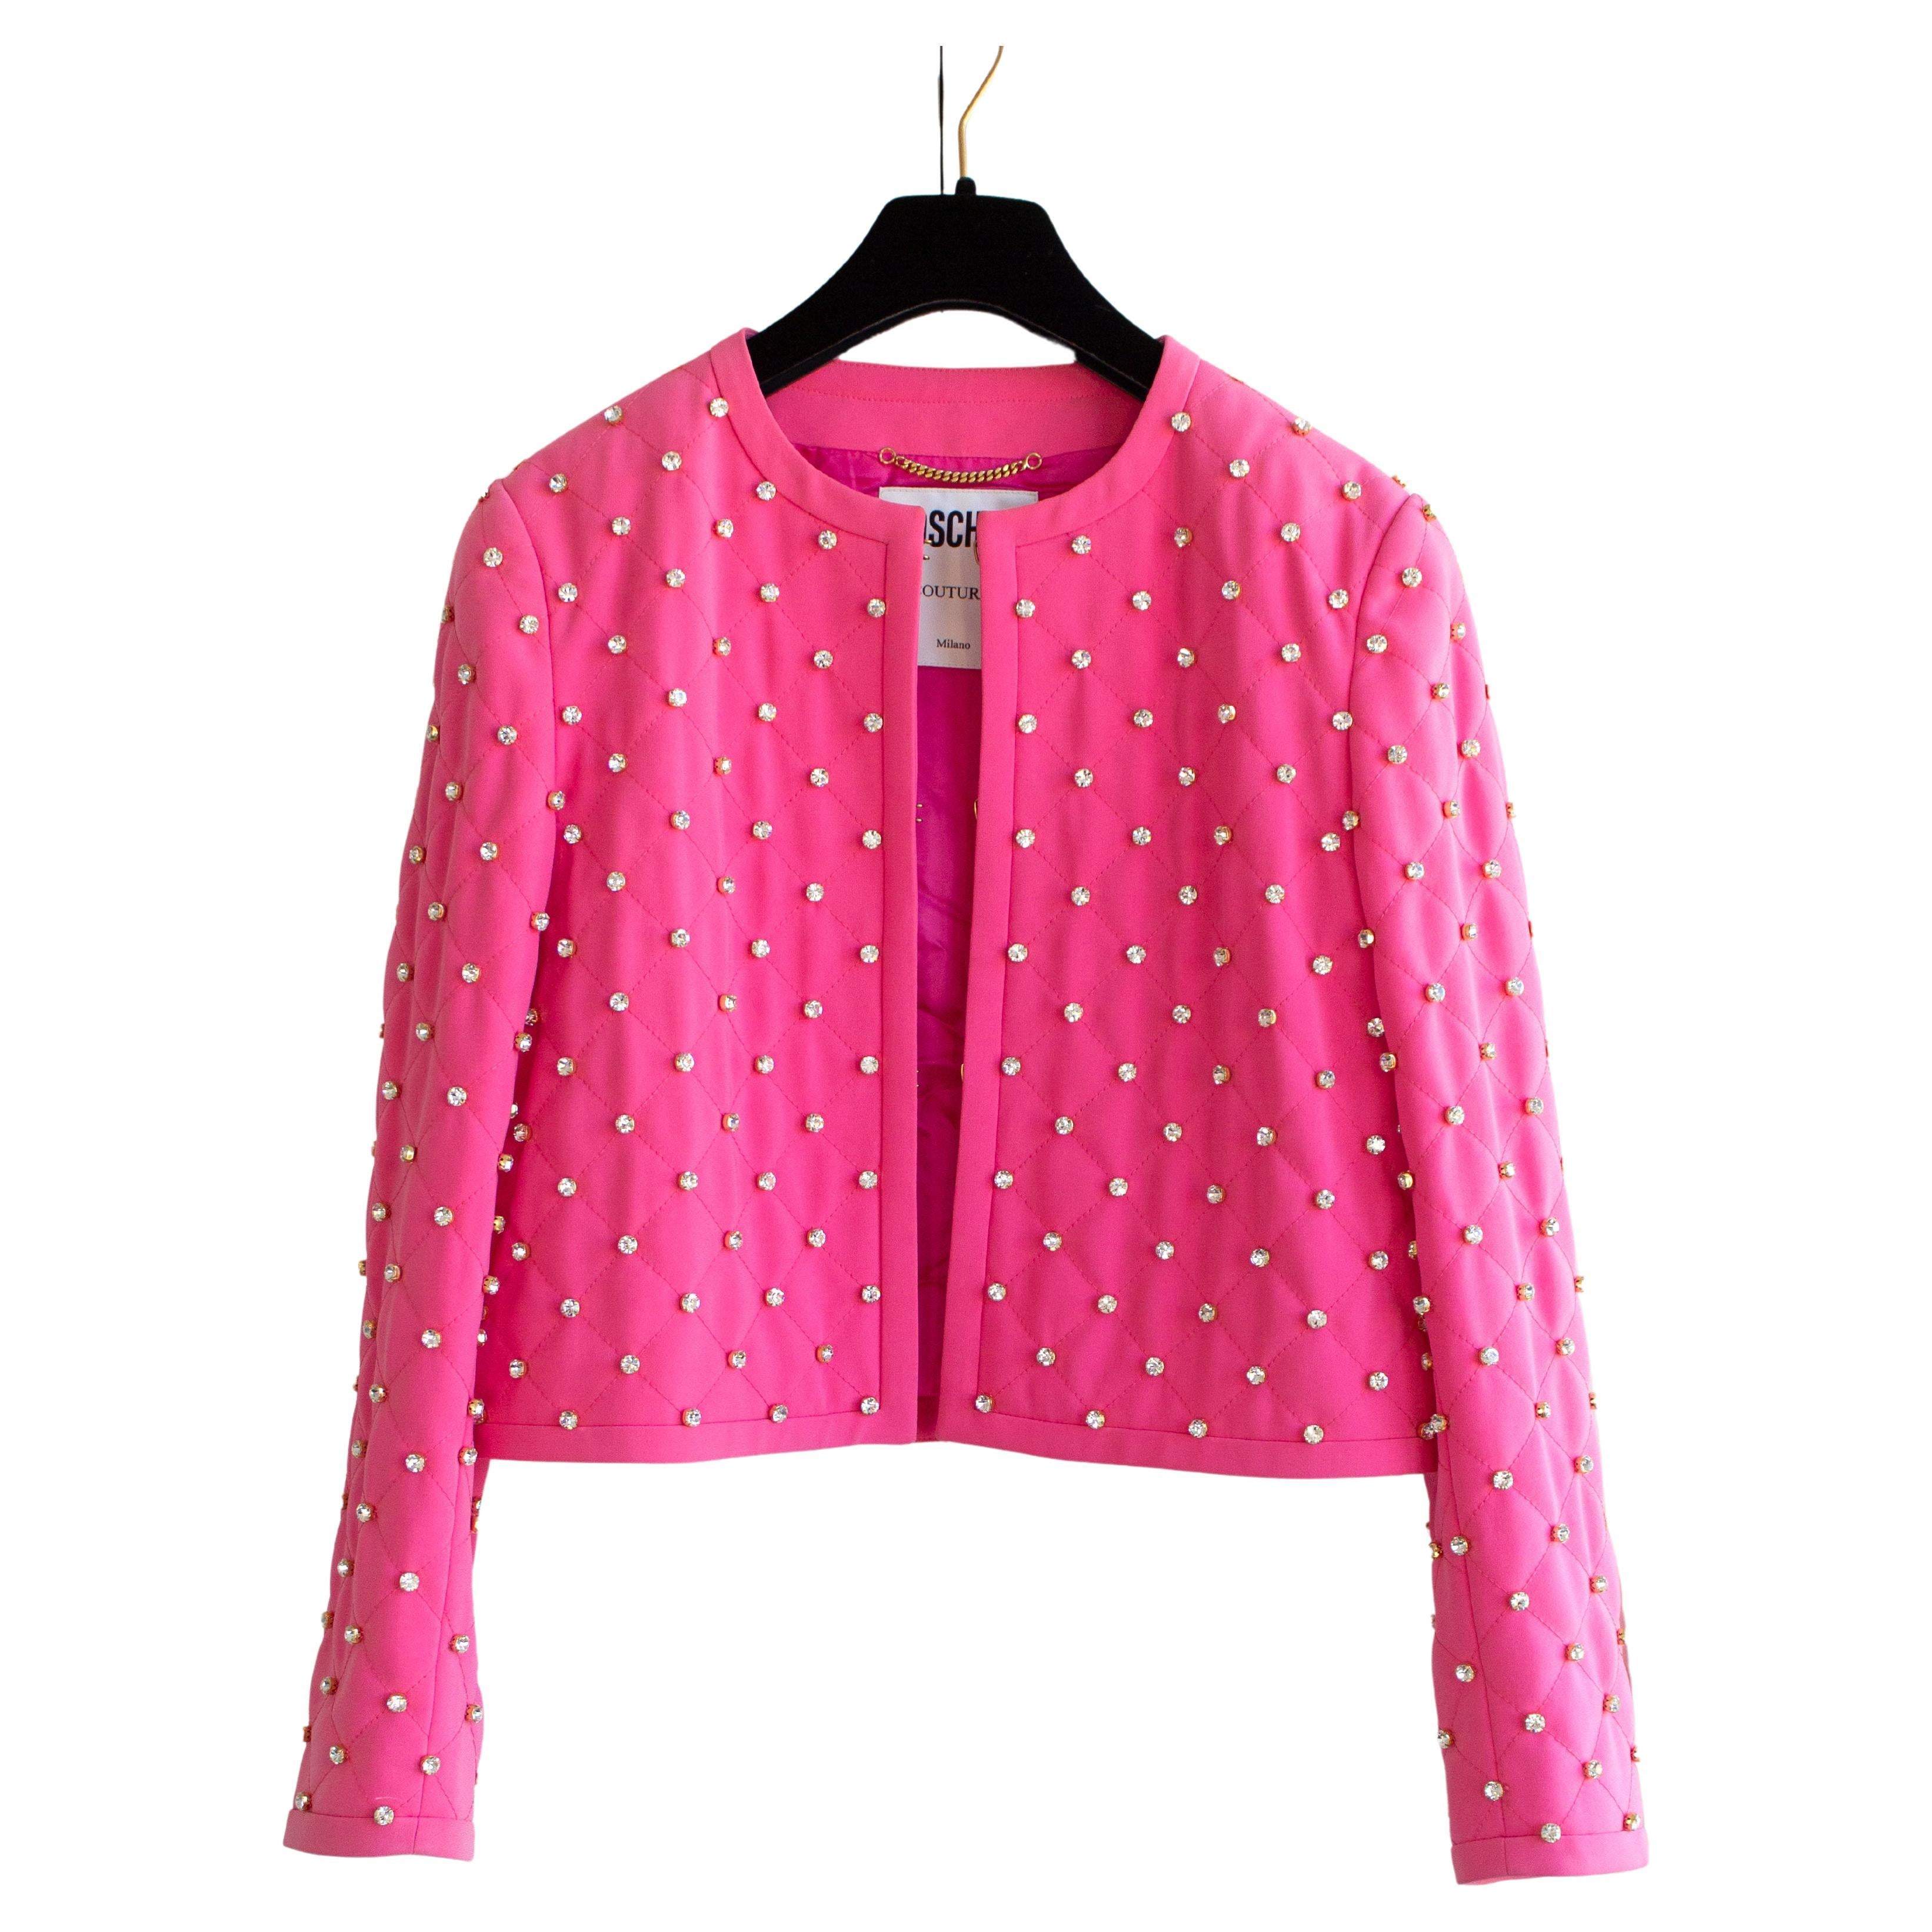 Moschino Couture S/S 2015 - Barbie - Veste rose ornée de strass et de cristaux en vente